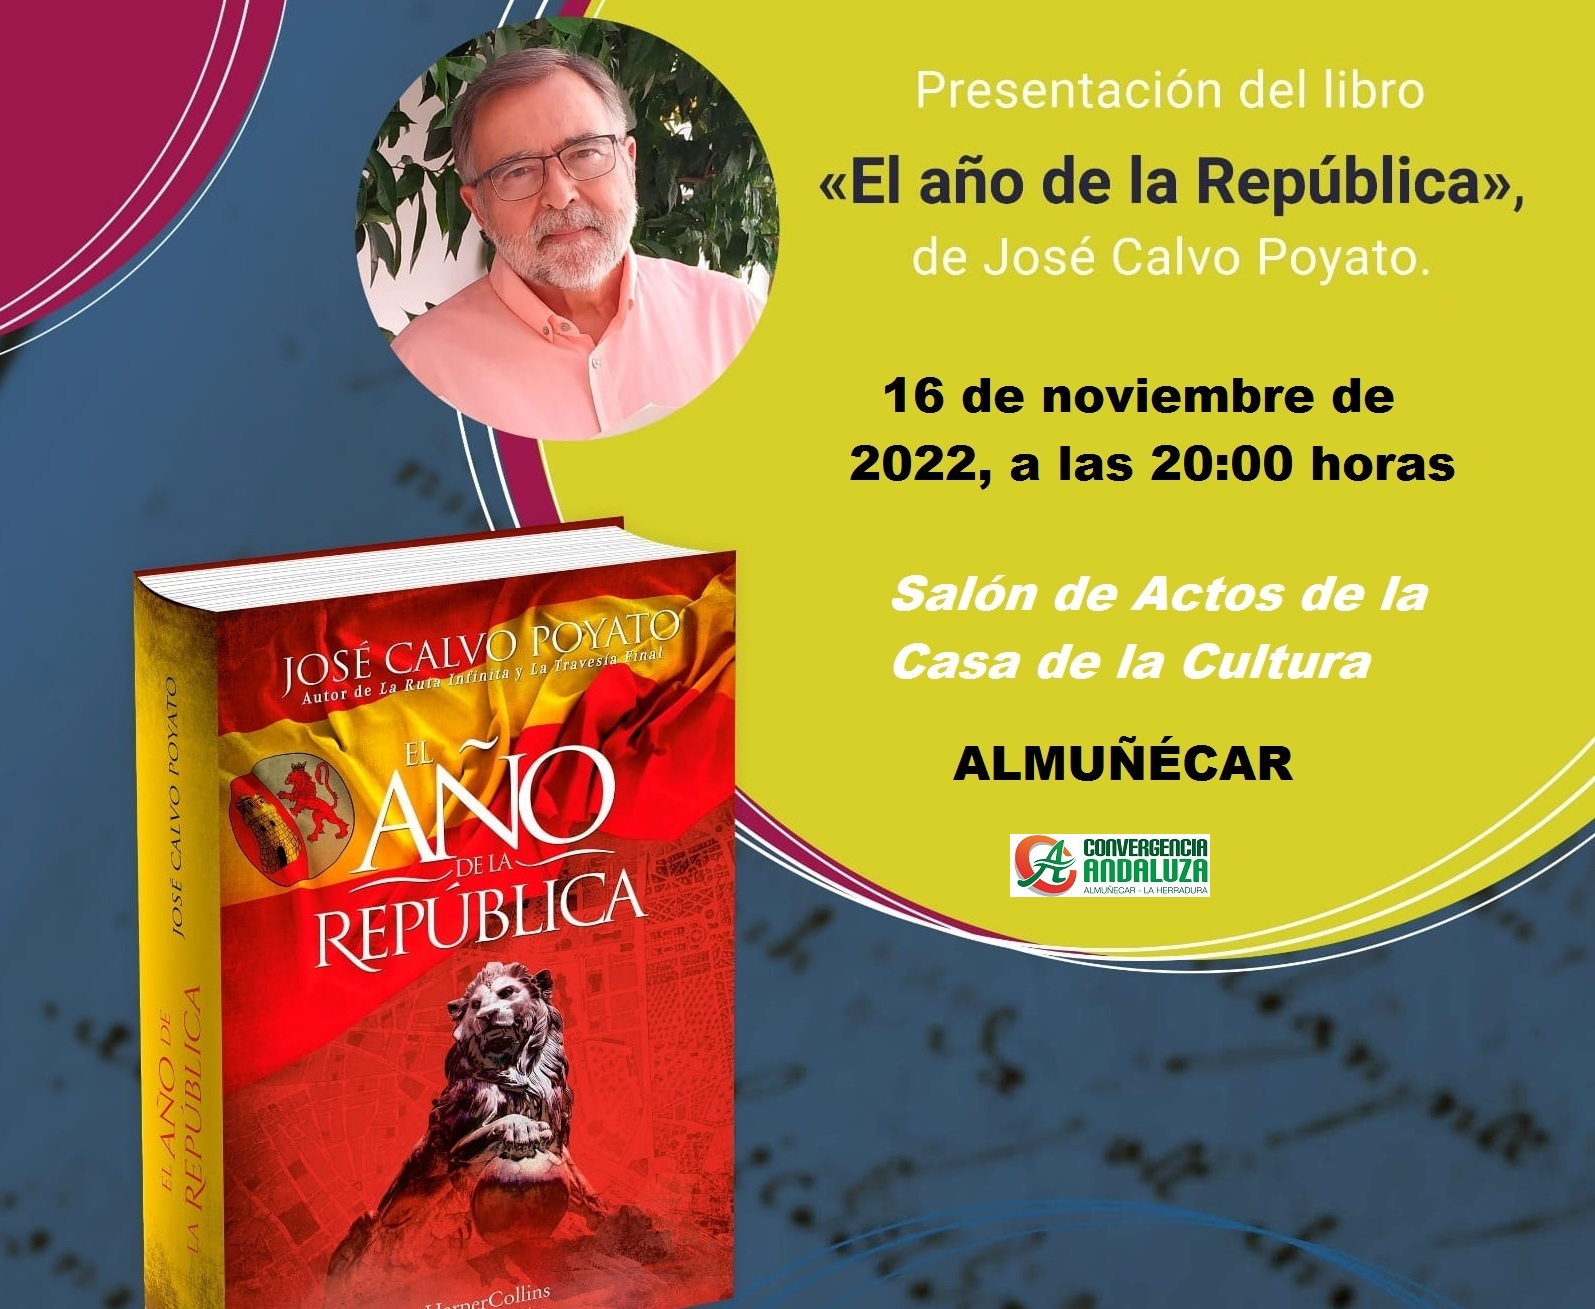 El escritor José Calvo Poyato presenta su última novela, “El año de la República”
